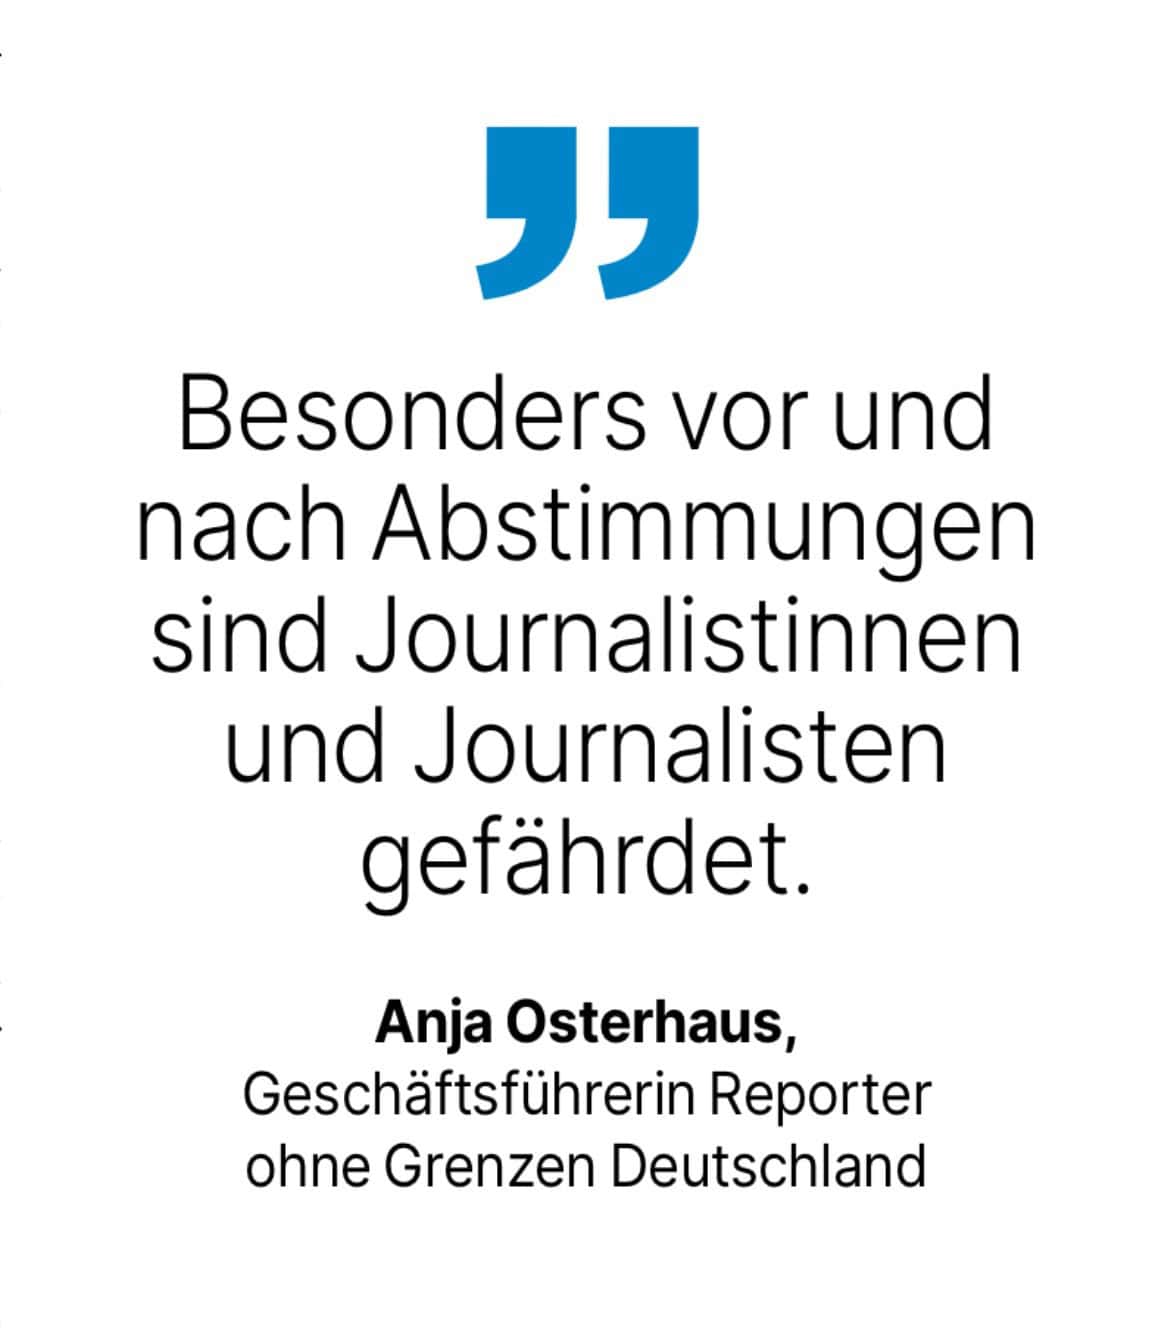 Anja Osterhaus, Geschäftsführerin Reporter ohne Grenzen Deutschland: Besonders vor und nach Abstimmungen sind Journalistinnen und Journalisten gefährdet.